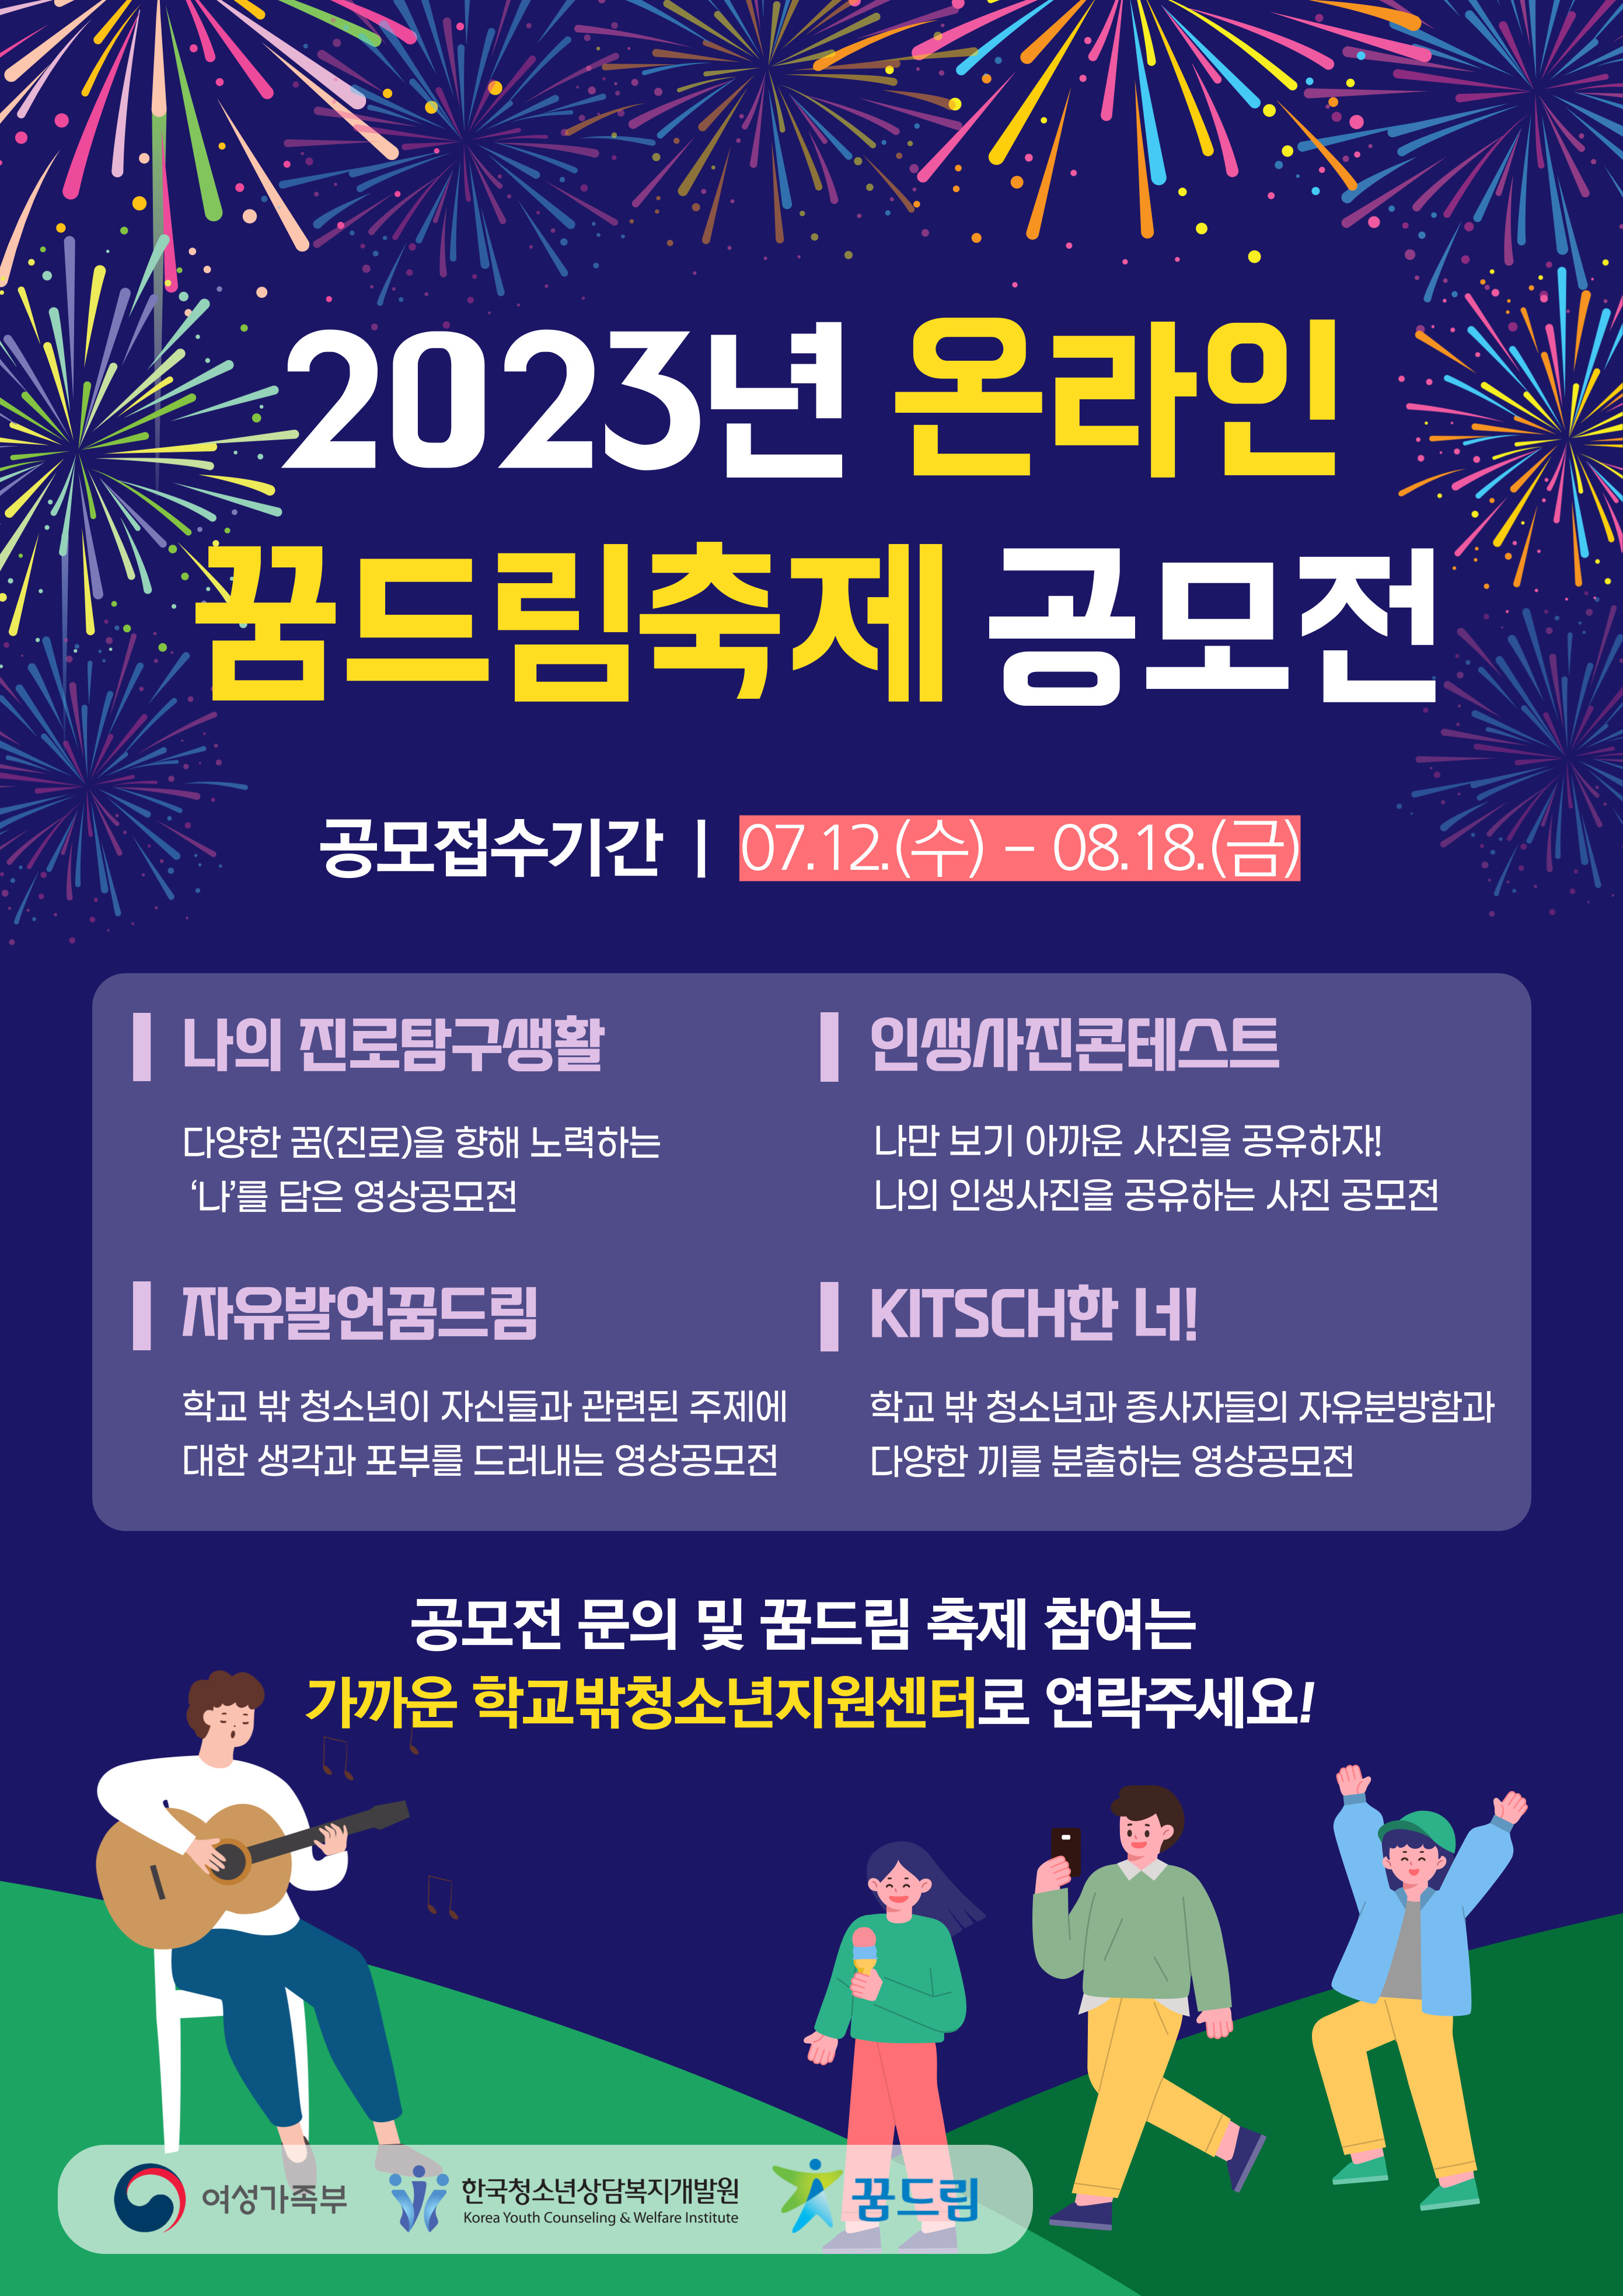 2023년 온라인 꿈드림 축제 공모전 안내 포스터.jpg